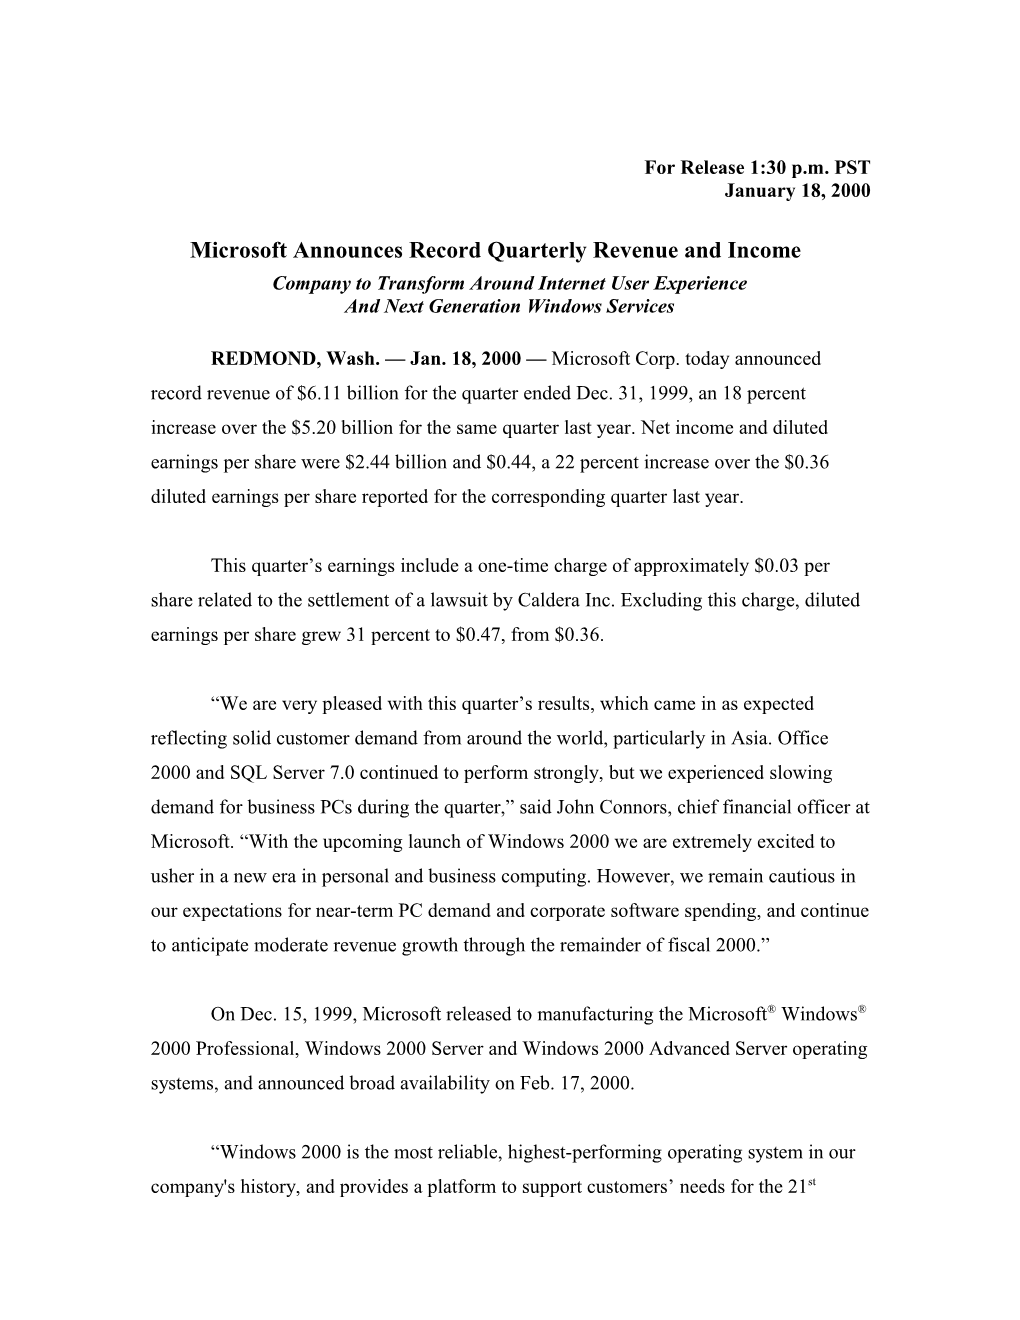 Microsoft Announces Record Quarterly Revenue and Income